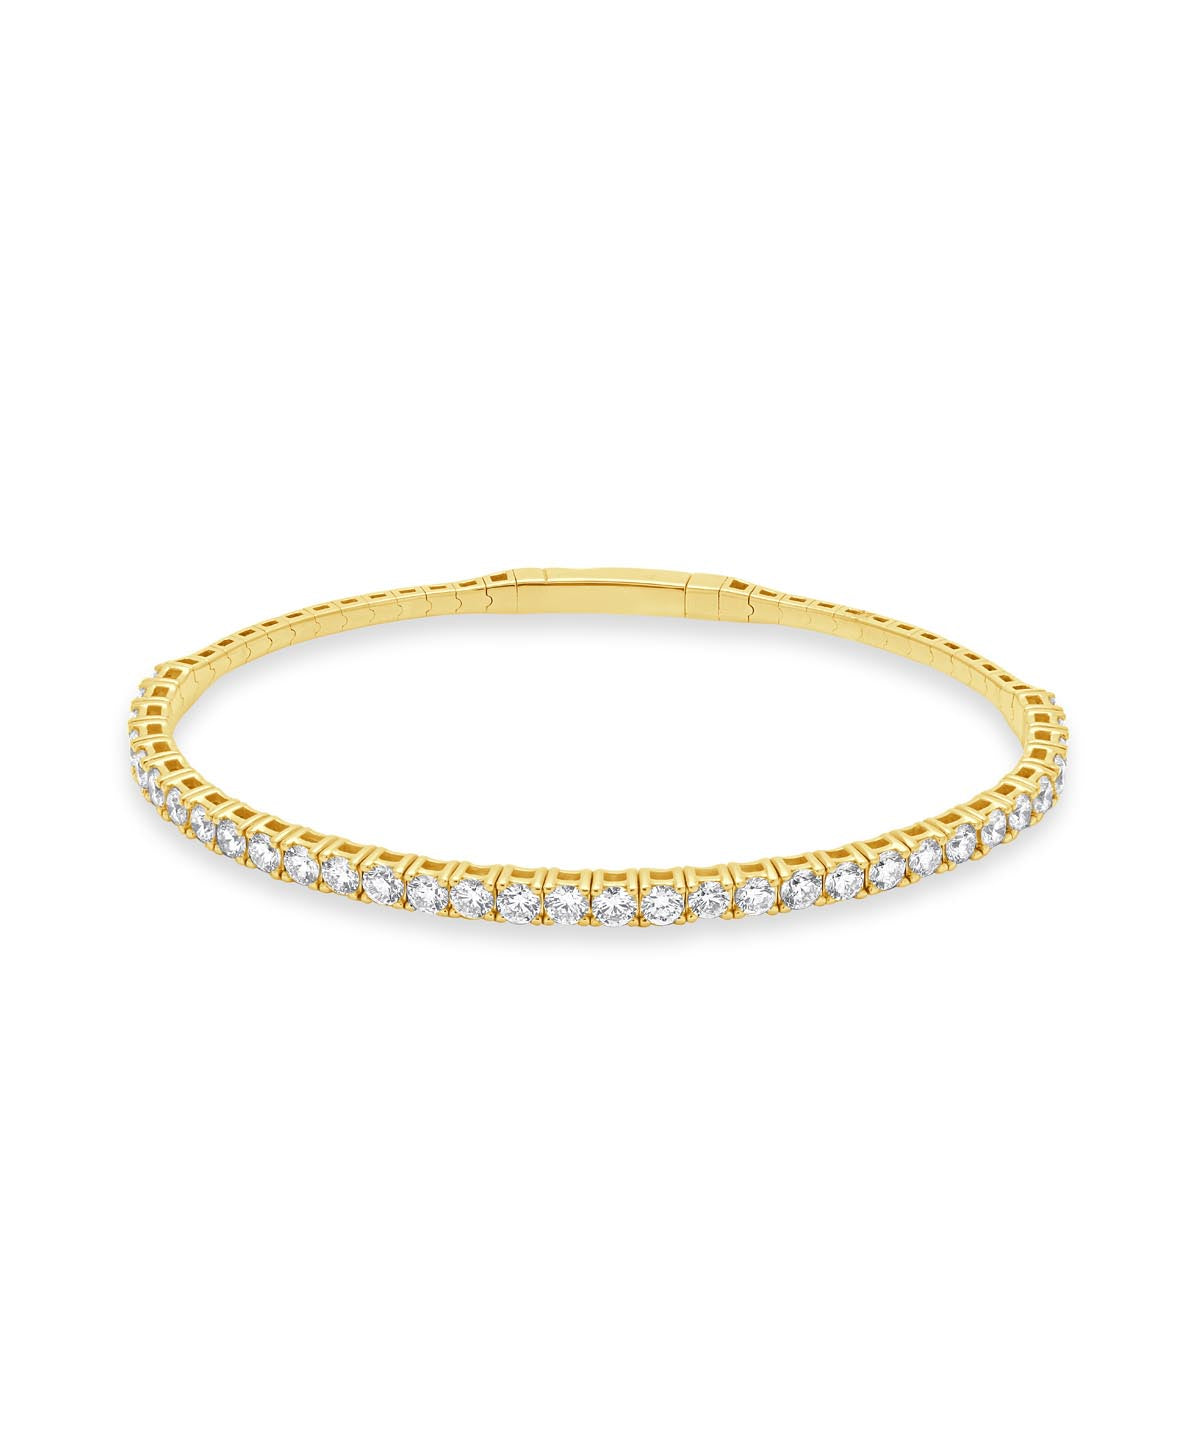 14K Yellow Gold Diamond Flexible Bangle Bracelet 2.85cttw